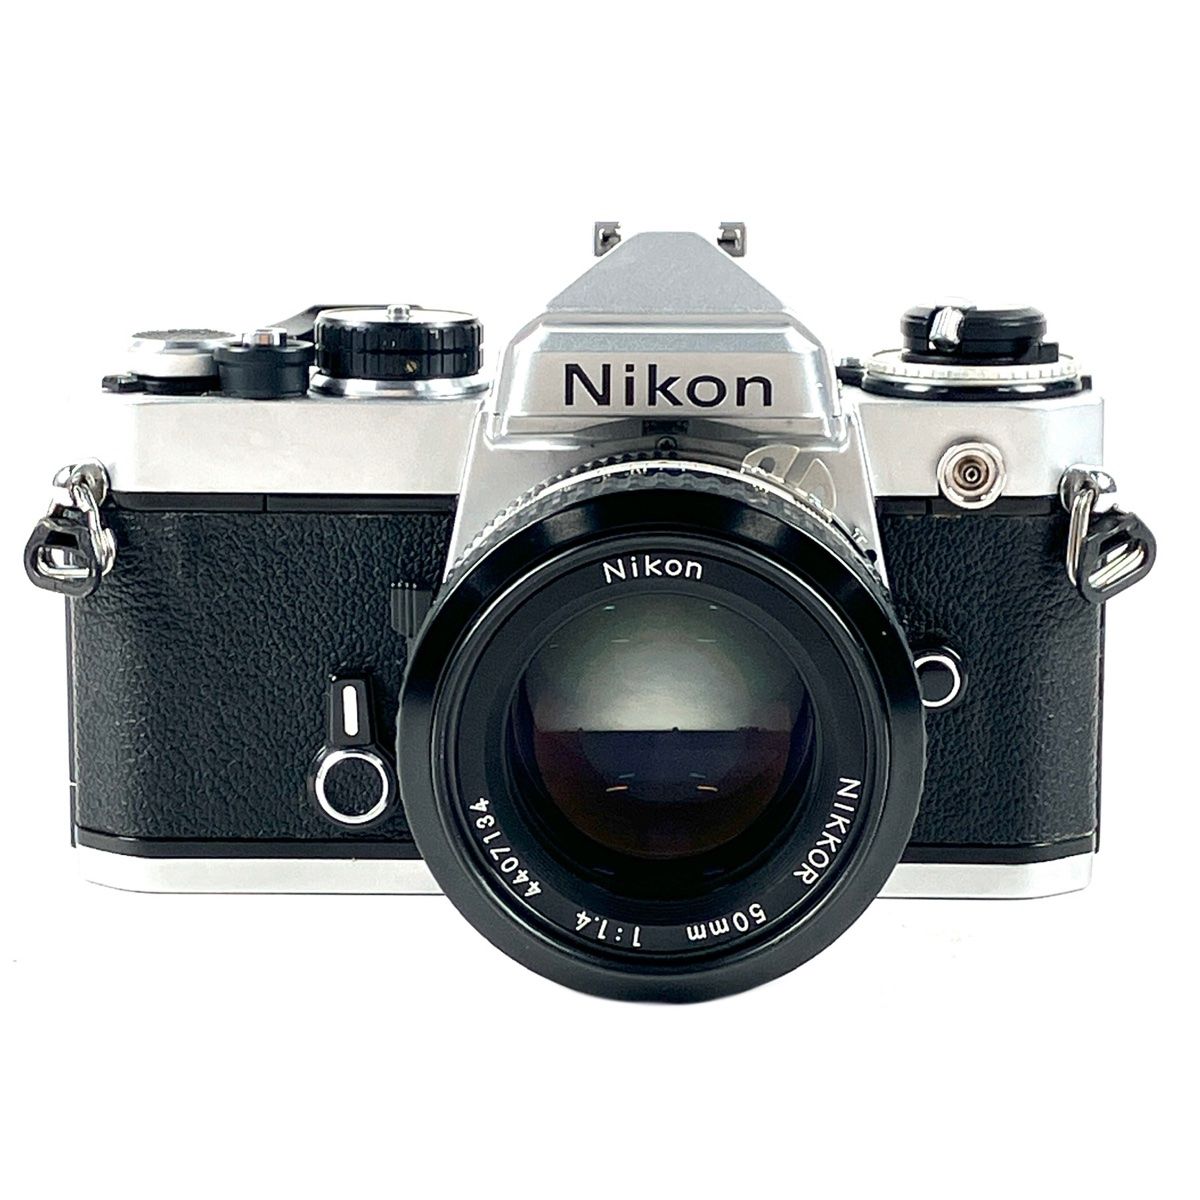 ニコン FE シルバー + Ai NIKKOR 50mm F1.4バイセルニコン - フィルムカメラ